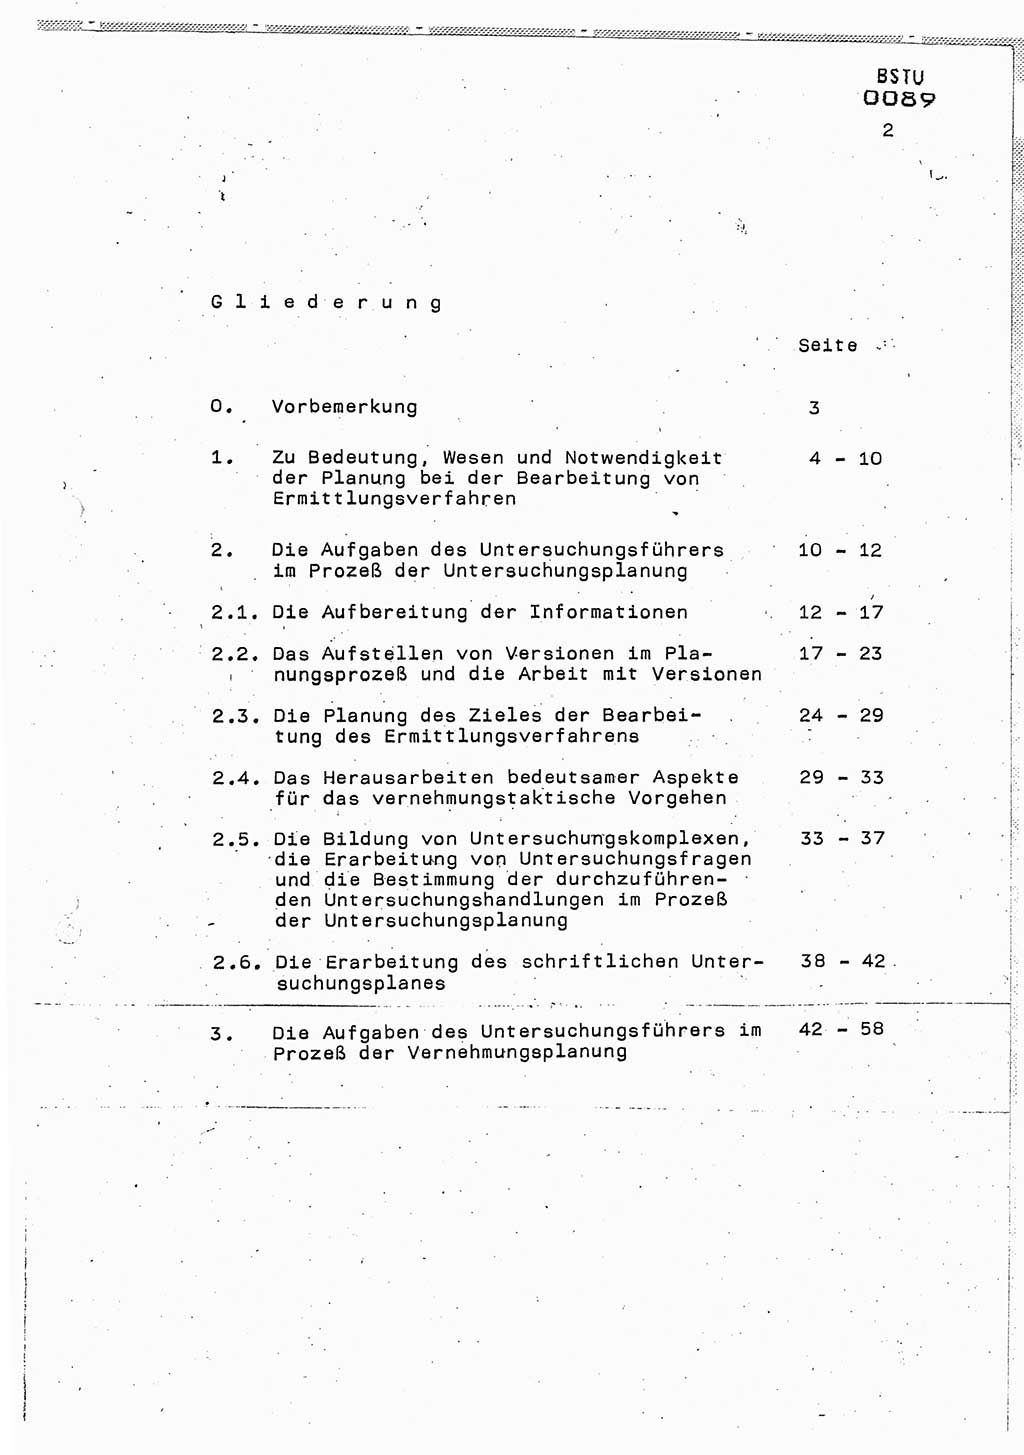 Lektion Ministerium für Staatssicherheit (MfS) [Deutsche Demokratische Republik (DDR)], Hauptabteilung (HA) Ⅸ, Berlin 1987, Seite 2 (Lekt. Pln. Bearb. EV MfS DDR HA Ⅸ /87 1987, S. 2)